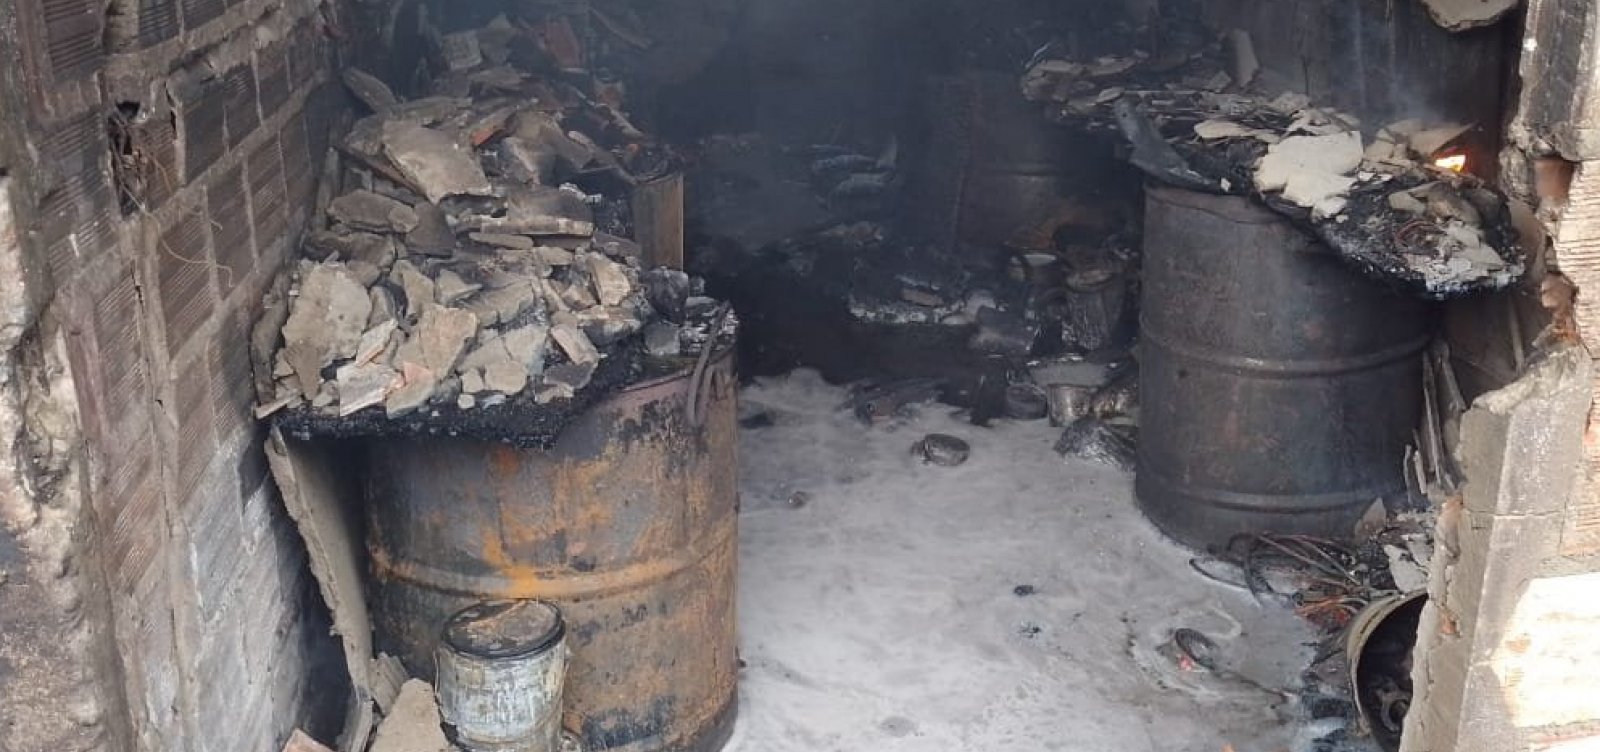 Empresa em Candeias onde houve incêndio não tinha alvará para armazenar combustível